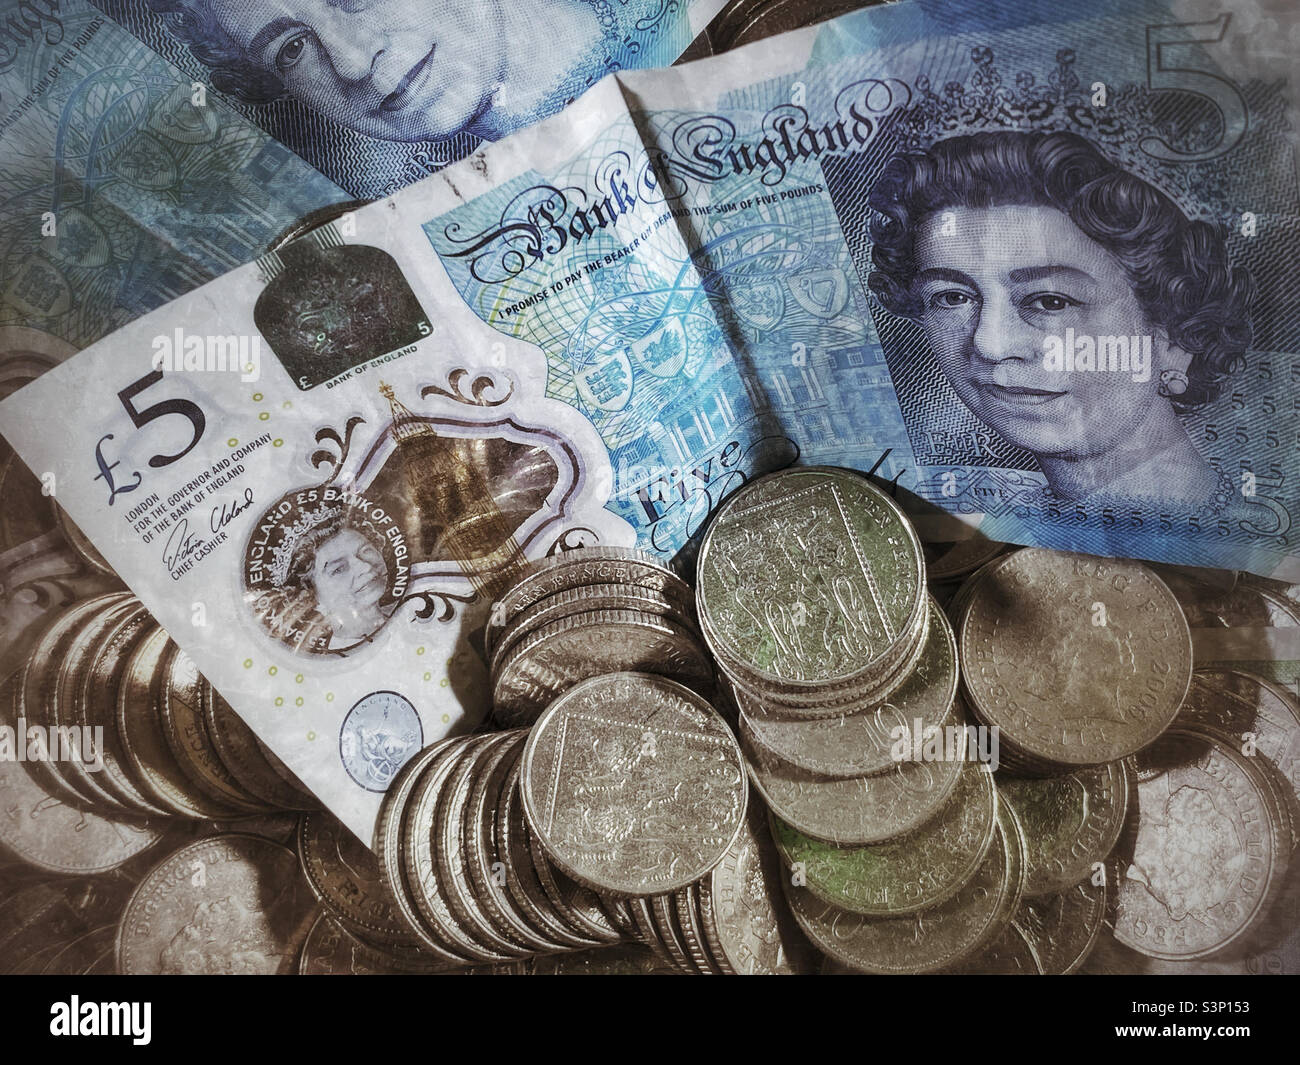 Bank of England Geld - zwei £5 Scheine und ein Stapel von zehn Pence Stücke. Bildnachweis - ©️ COLIN HOSKINS. Stockfoto